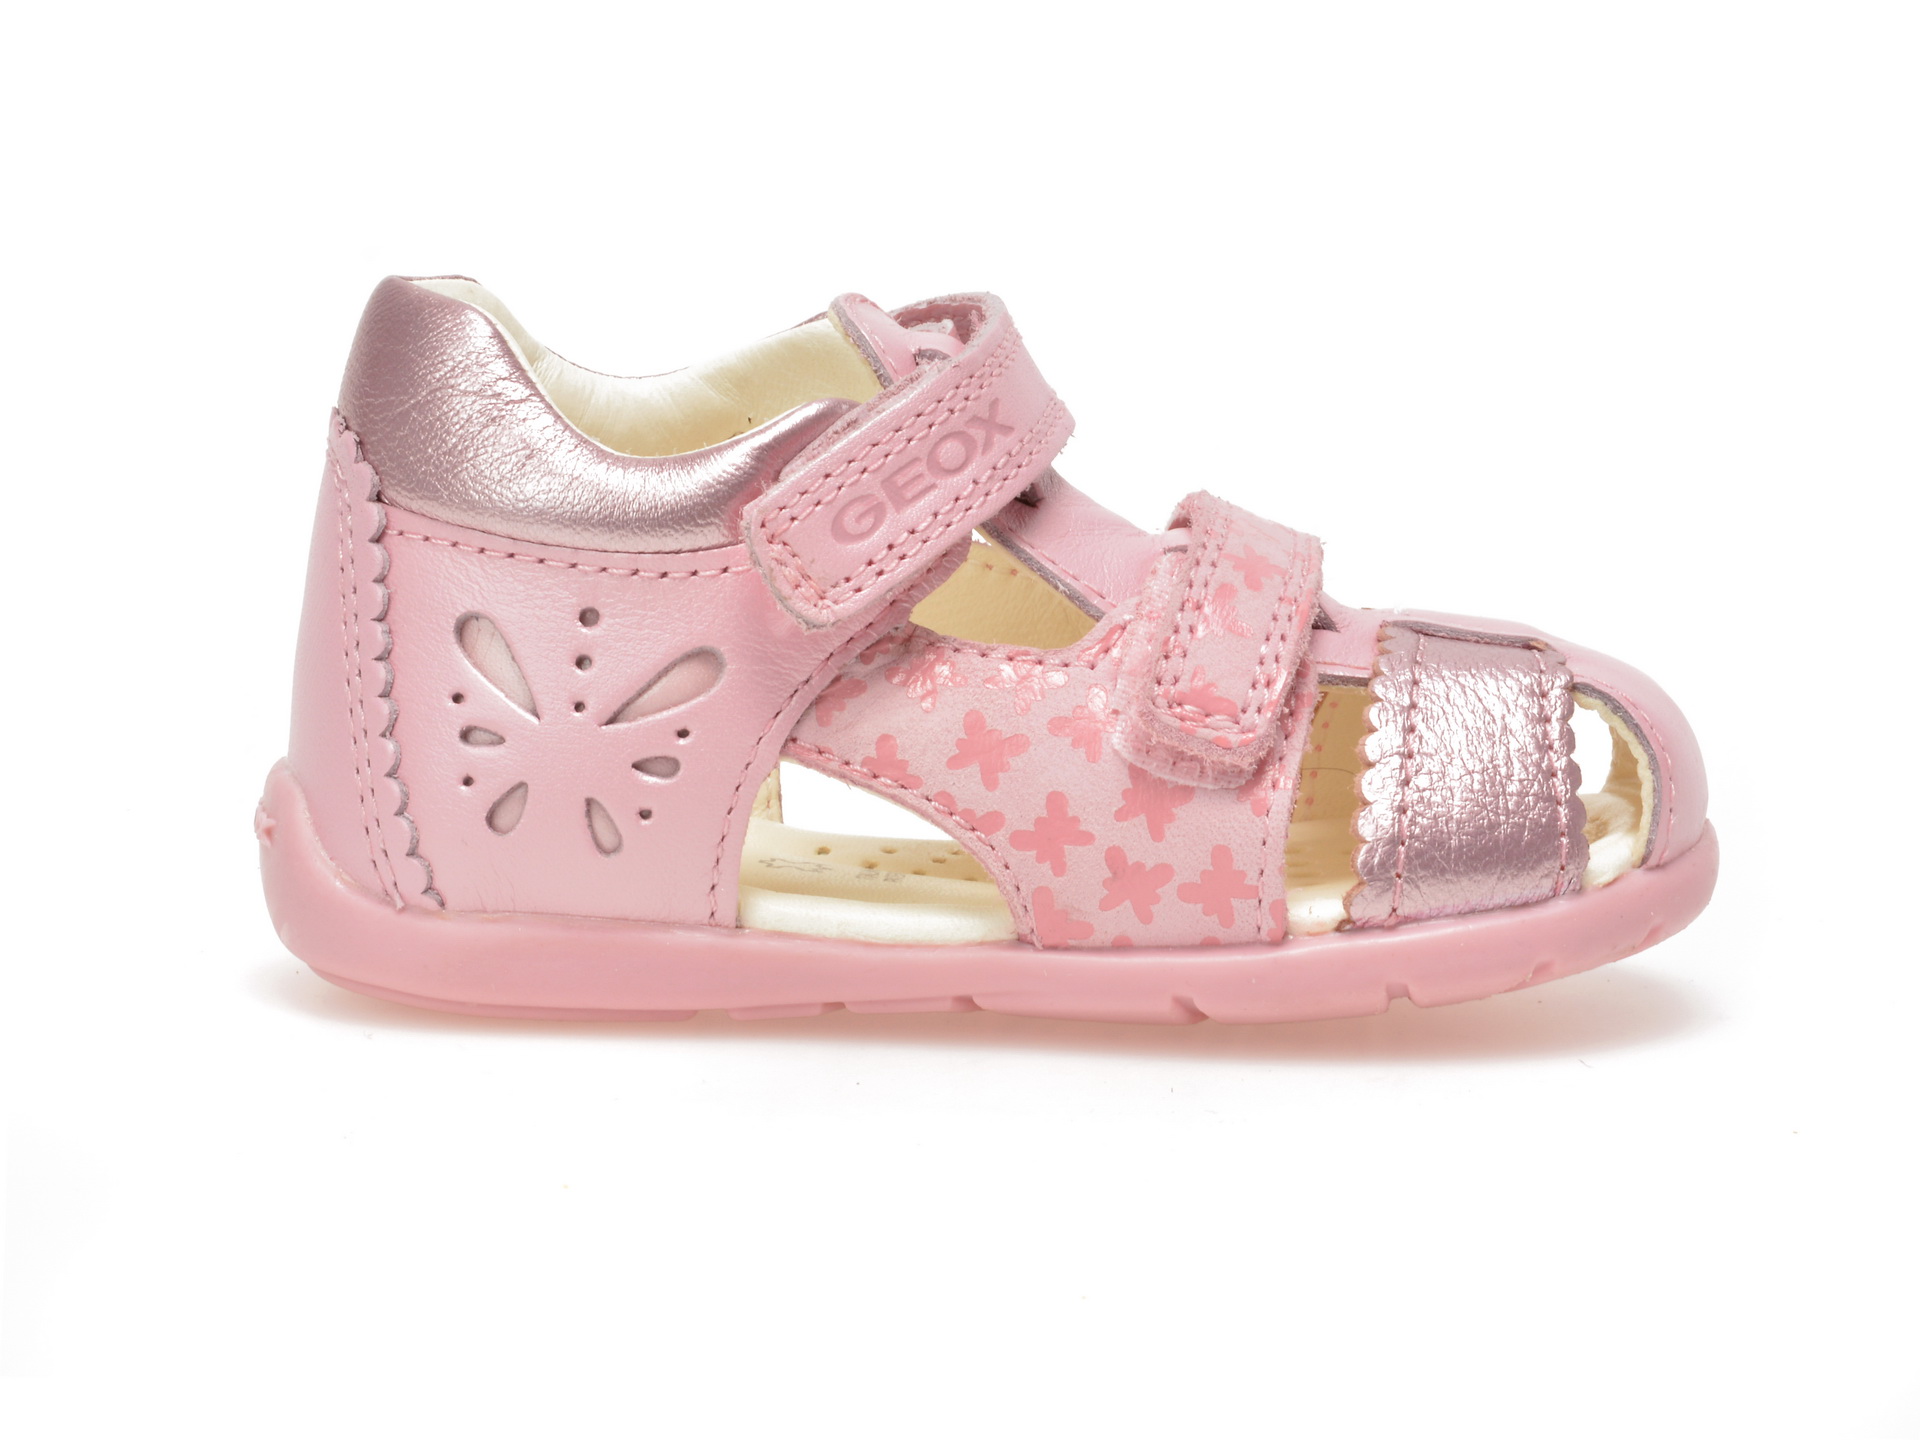 Sandale pentru copii GEOX roz, B7251C, din piele naturala